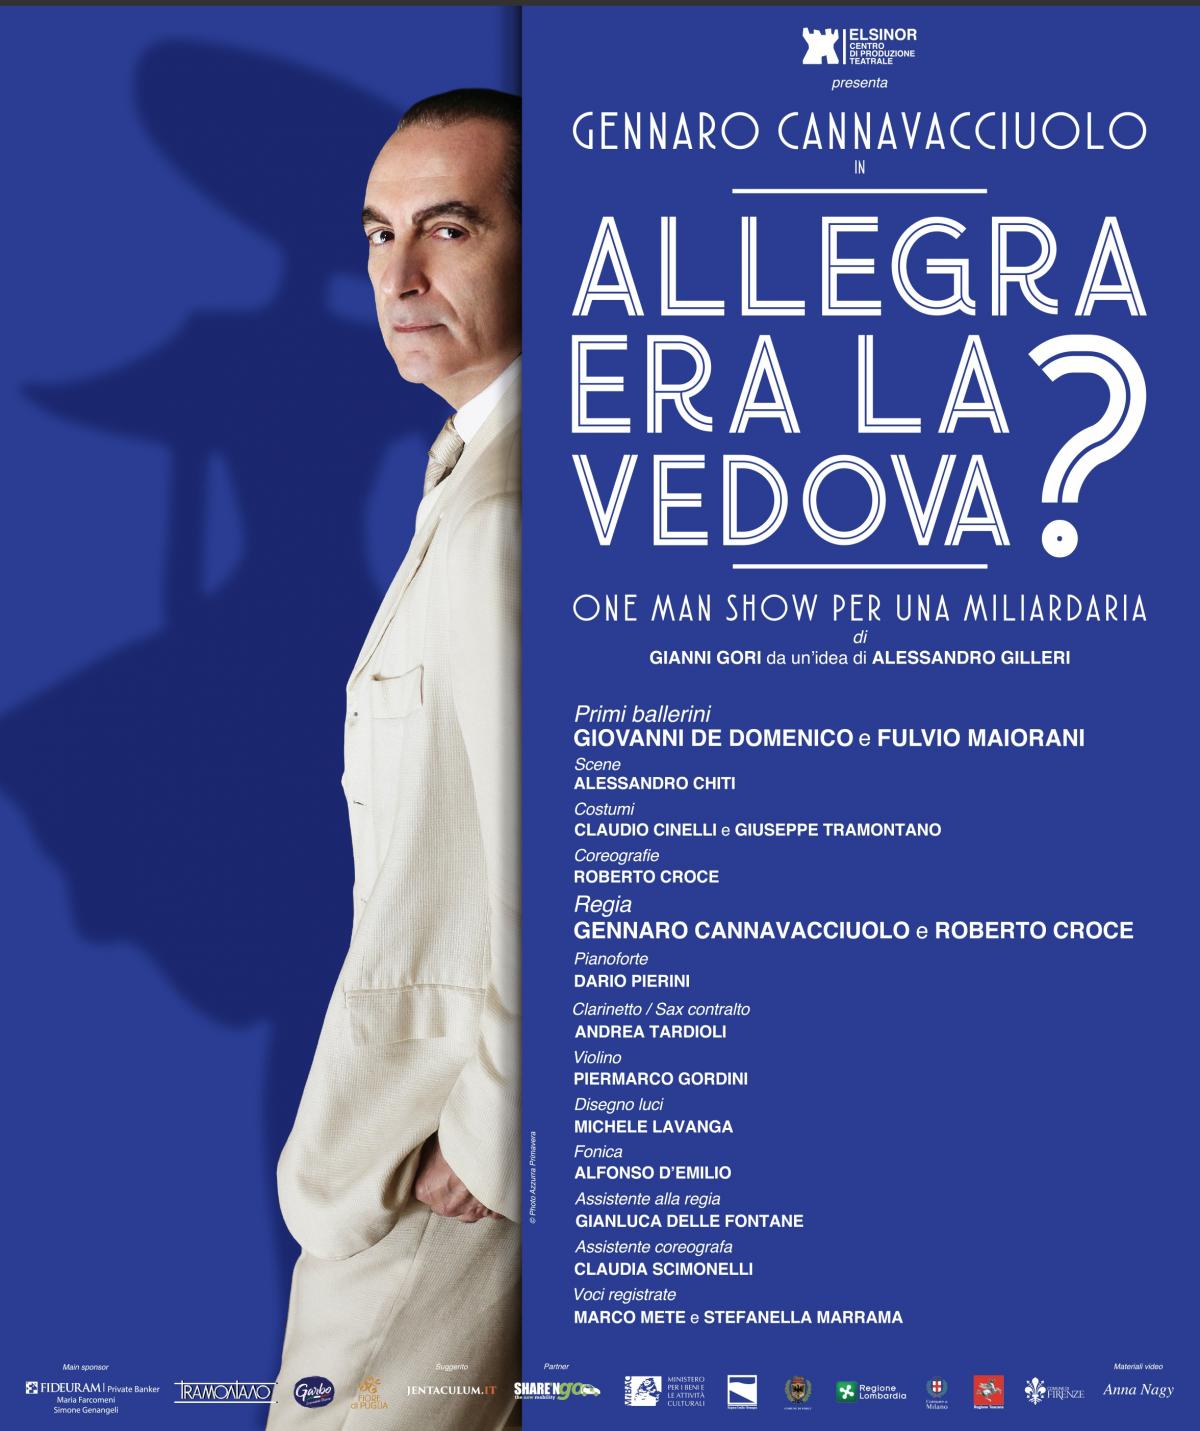 6 marzo - 10 marzo 2019 - Milano - Allegra era la Vedova?